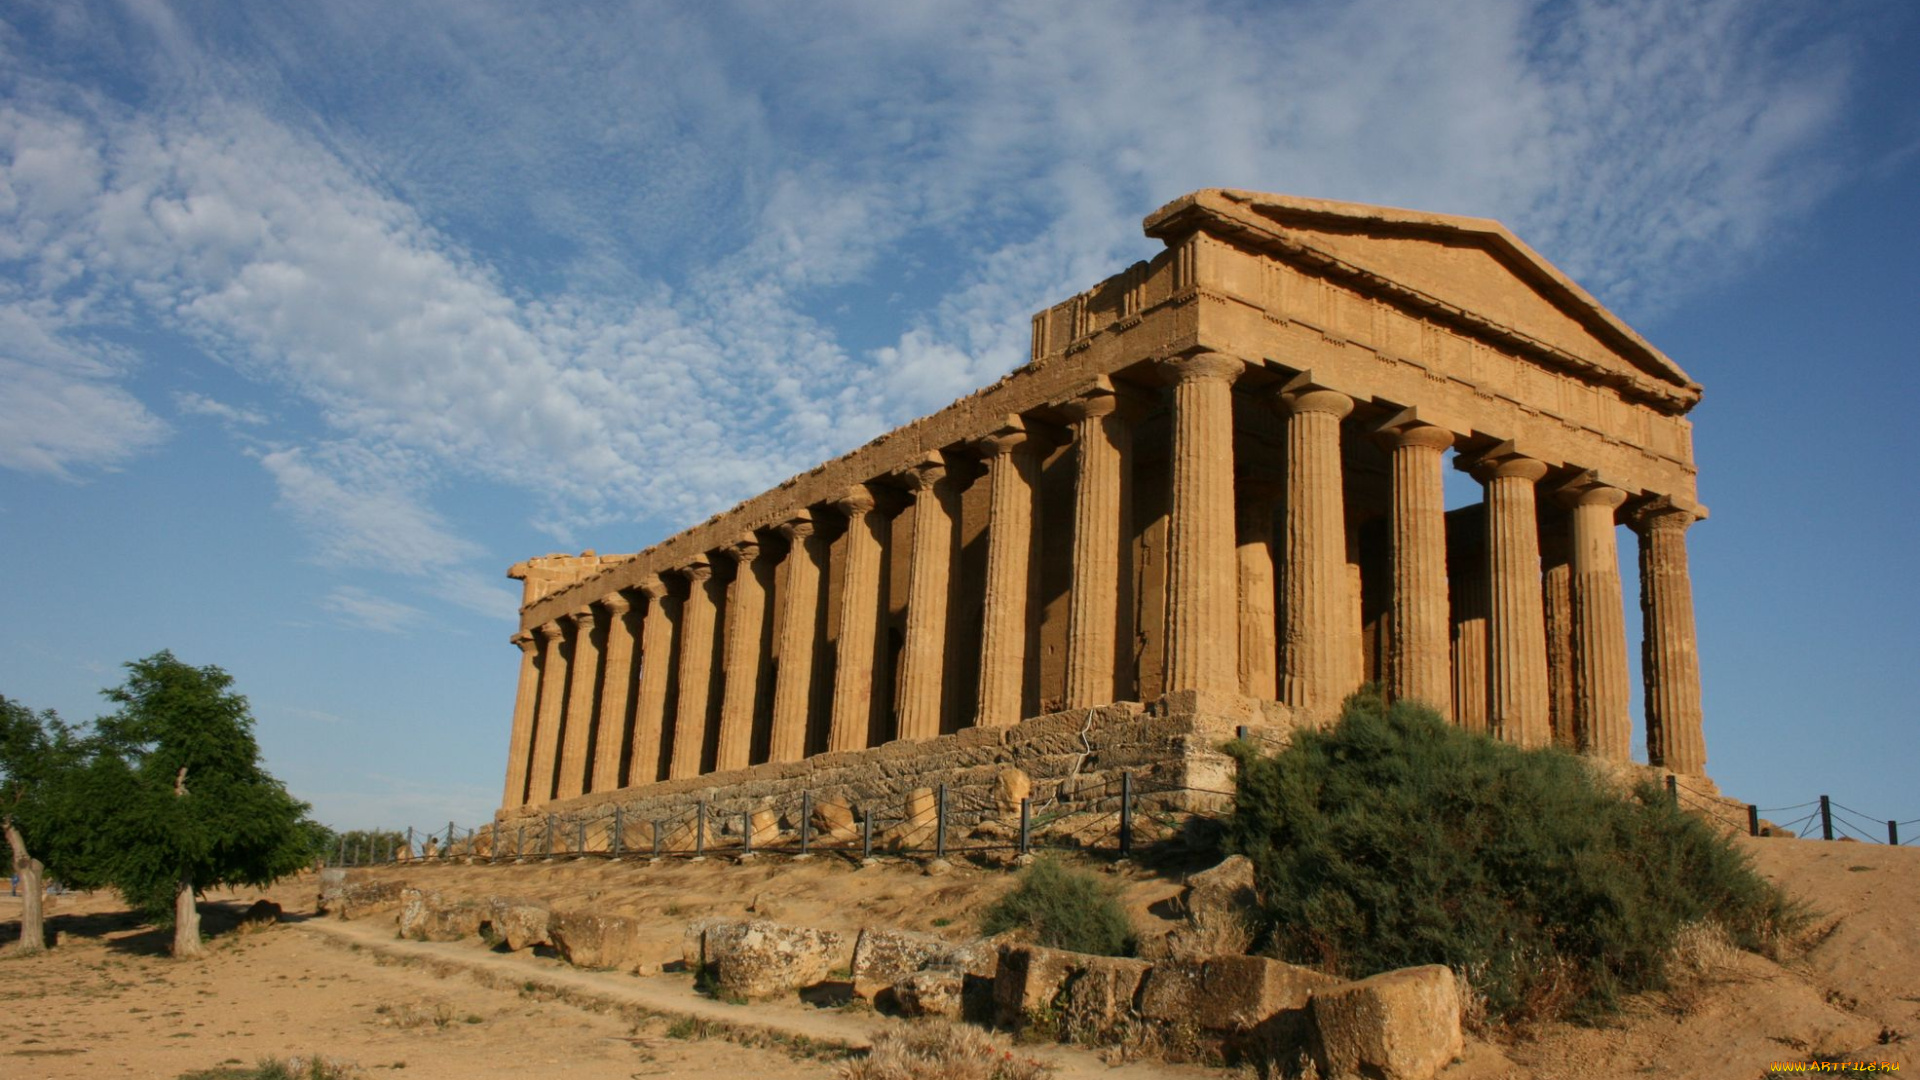 the, greek, temple, in, segesta, города, исторические, архитектурные, памятники, sicily